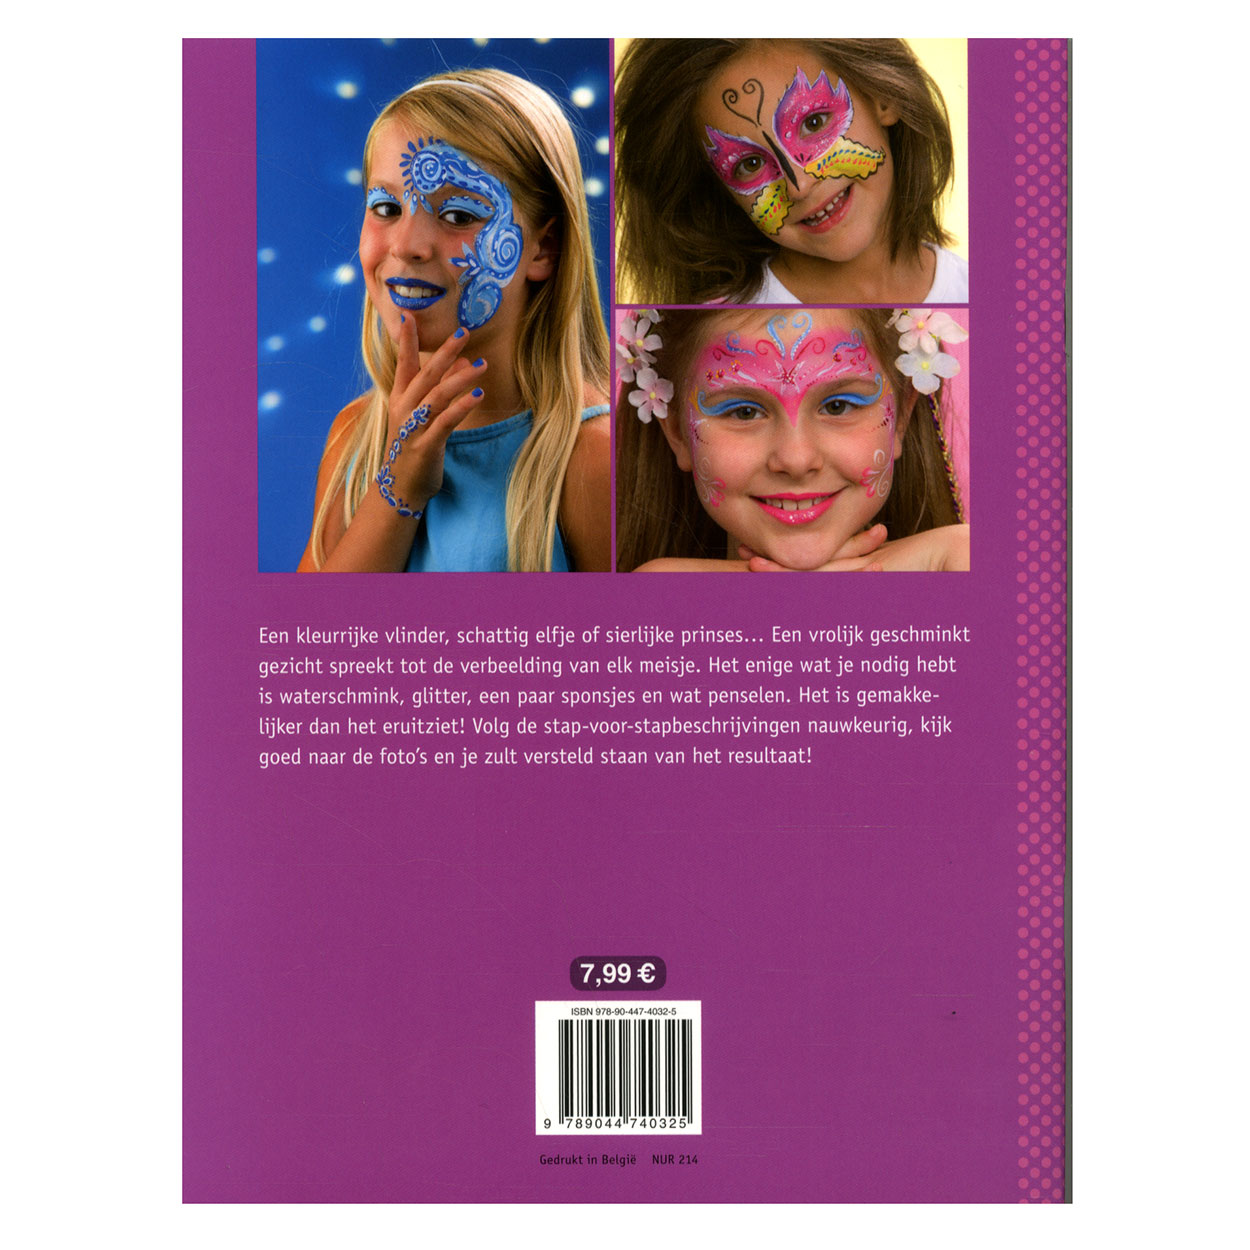 Kids Creative - Maquillage amusant pour les filles